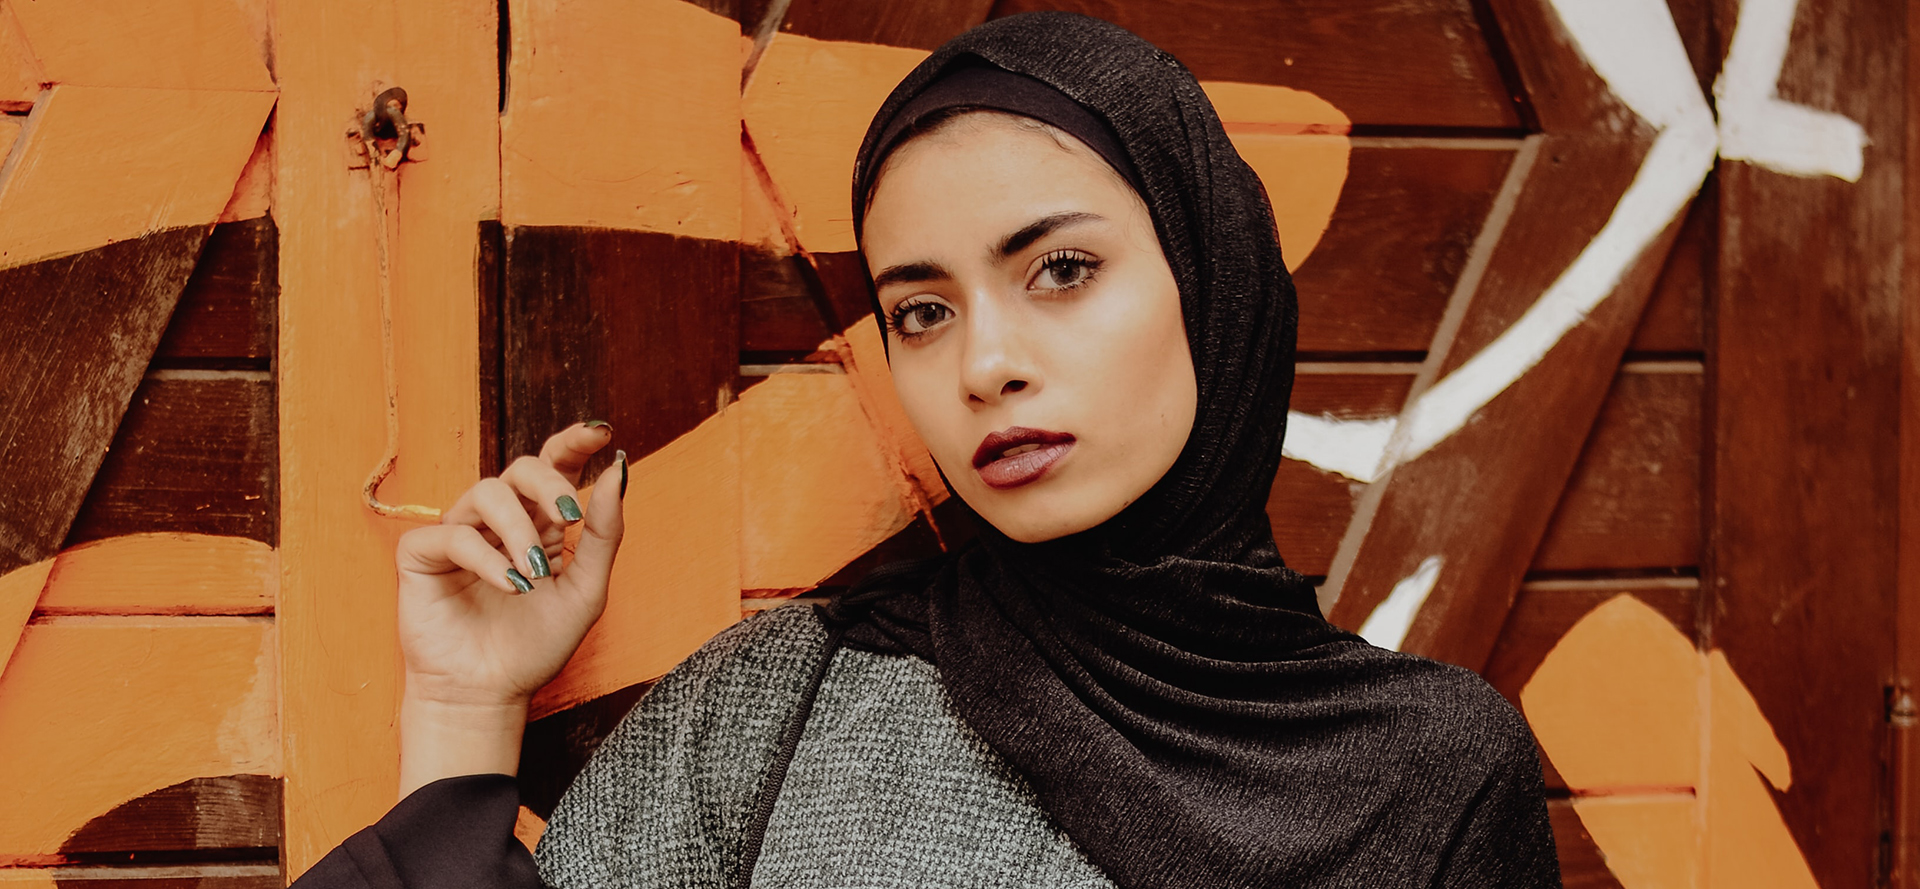 Arabische Frau mit schwarzem Kopftuch.